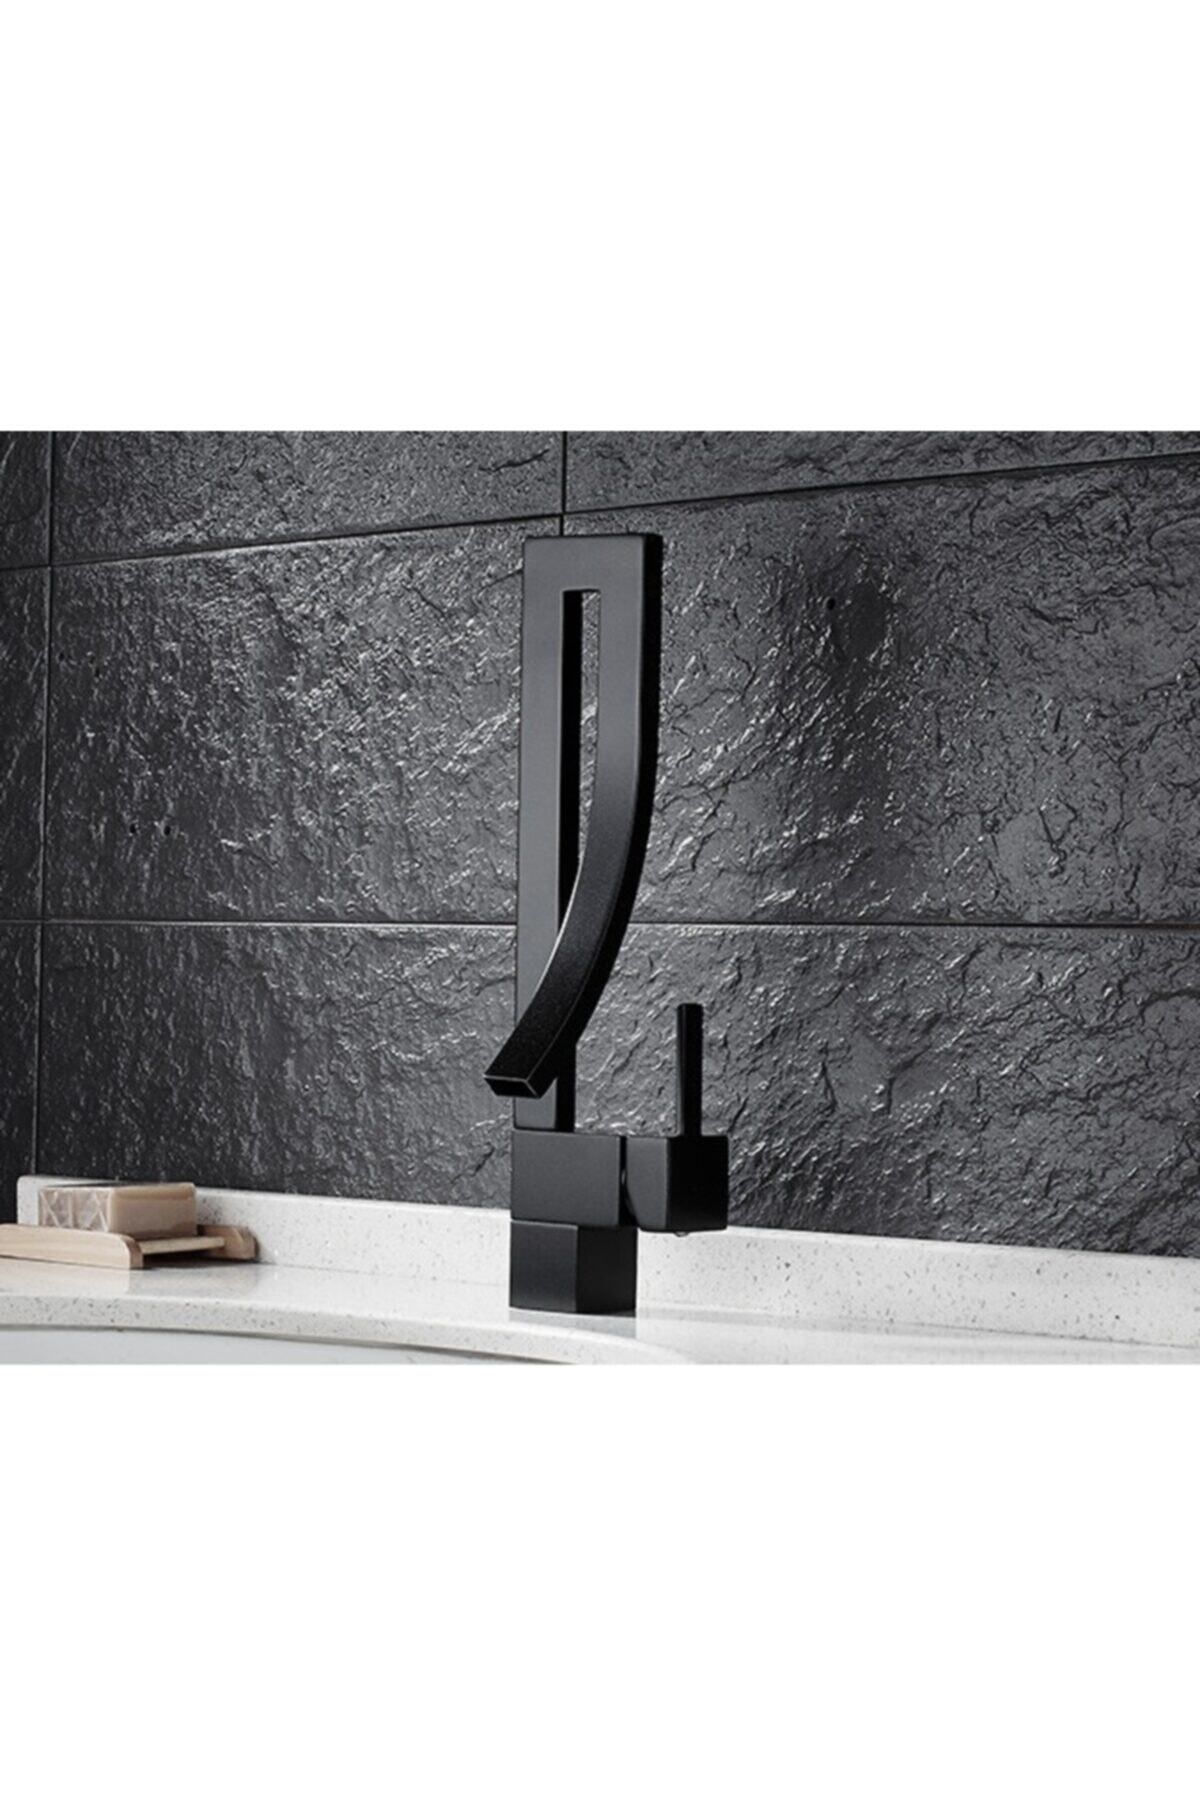 OEM Banyo Lavabo Bataryası Mat Siyah Özel Tasarım Tarz Yeni Ürün 7 Yıl Garantili Ithal